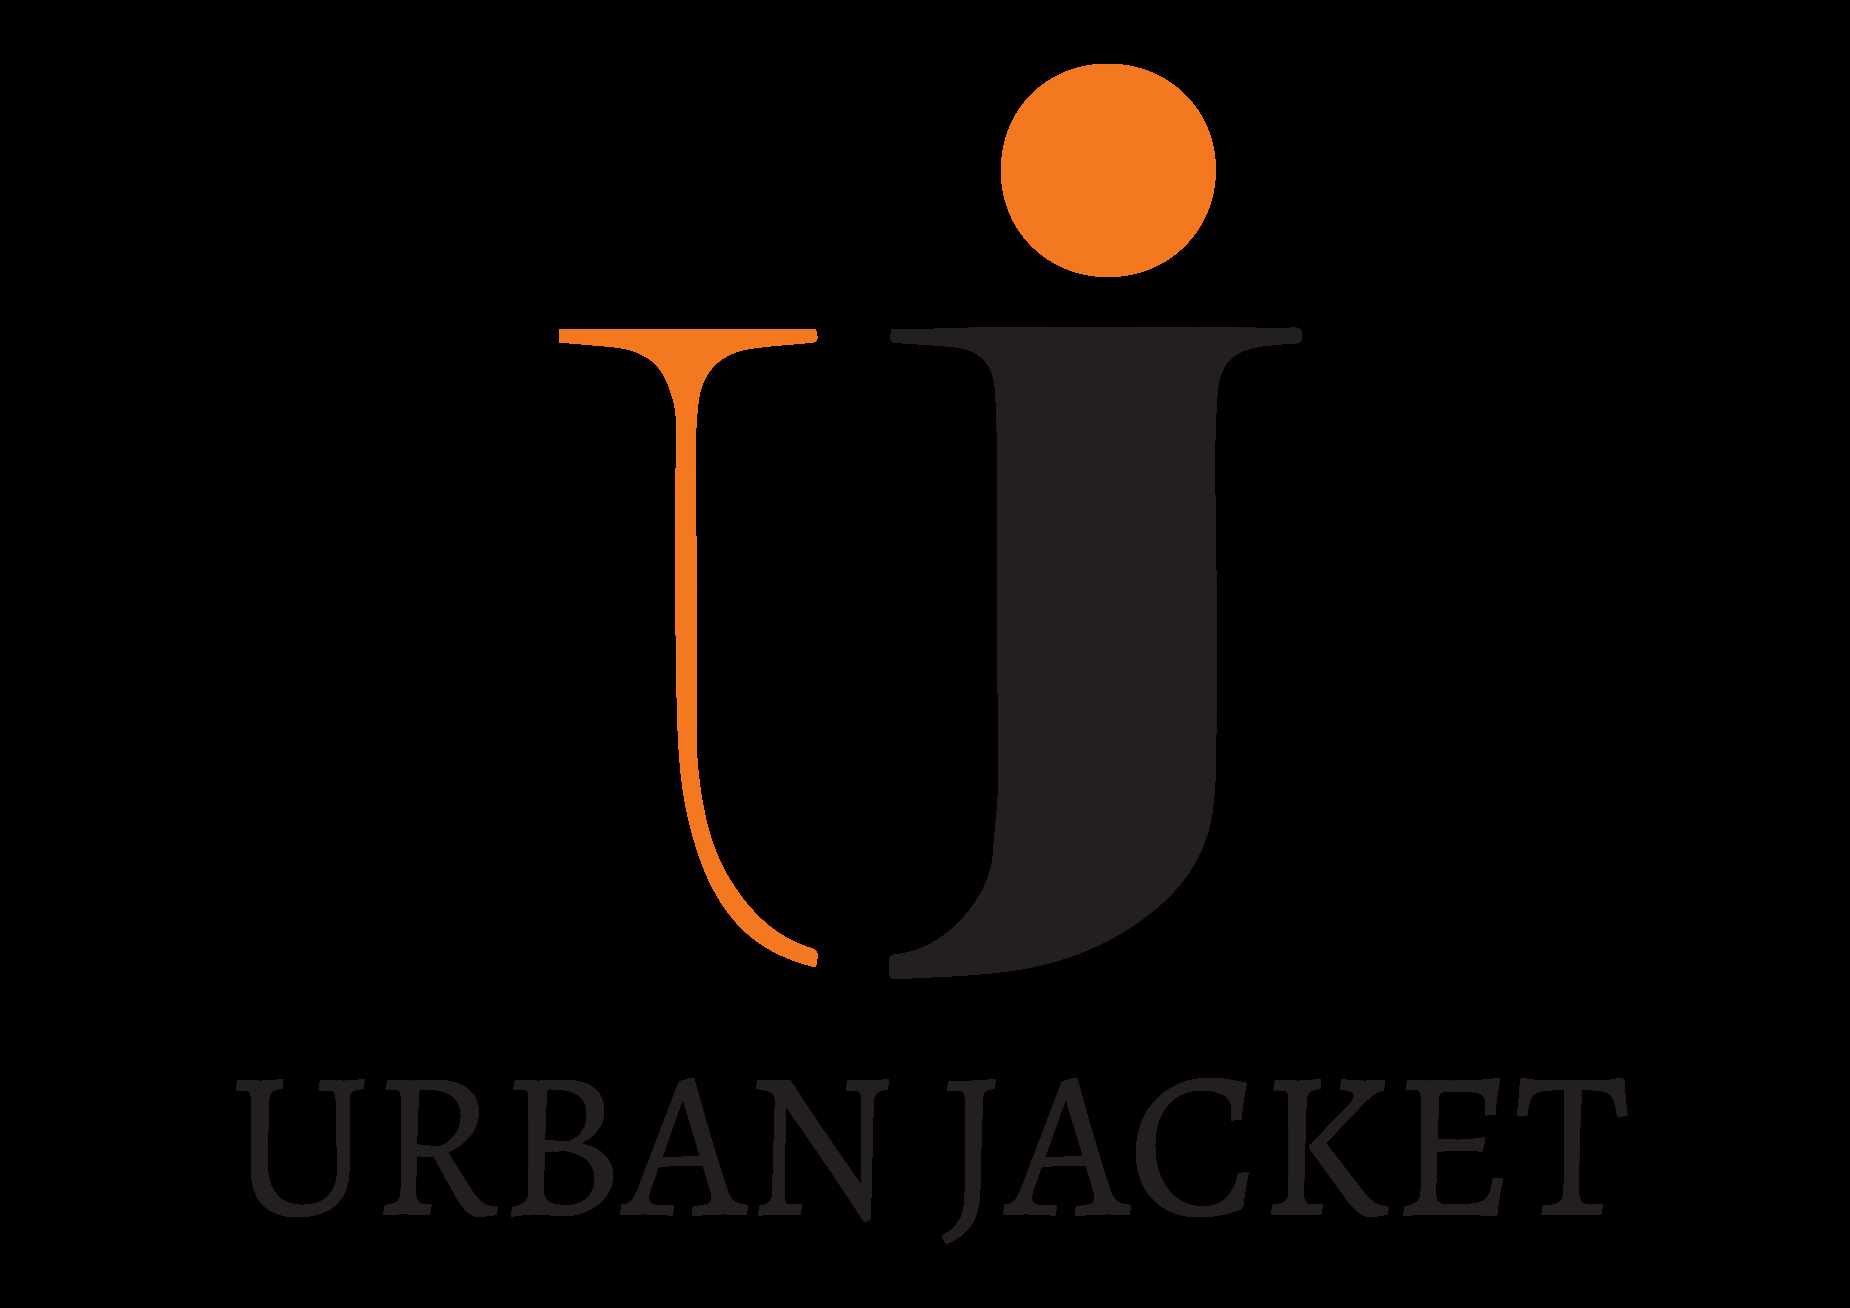 Urban Jackets